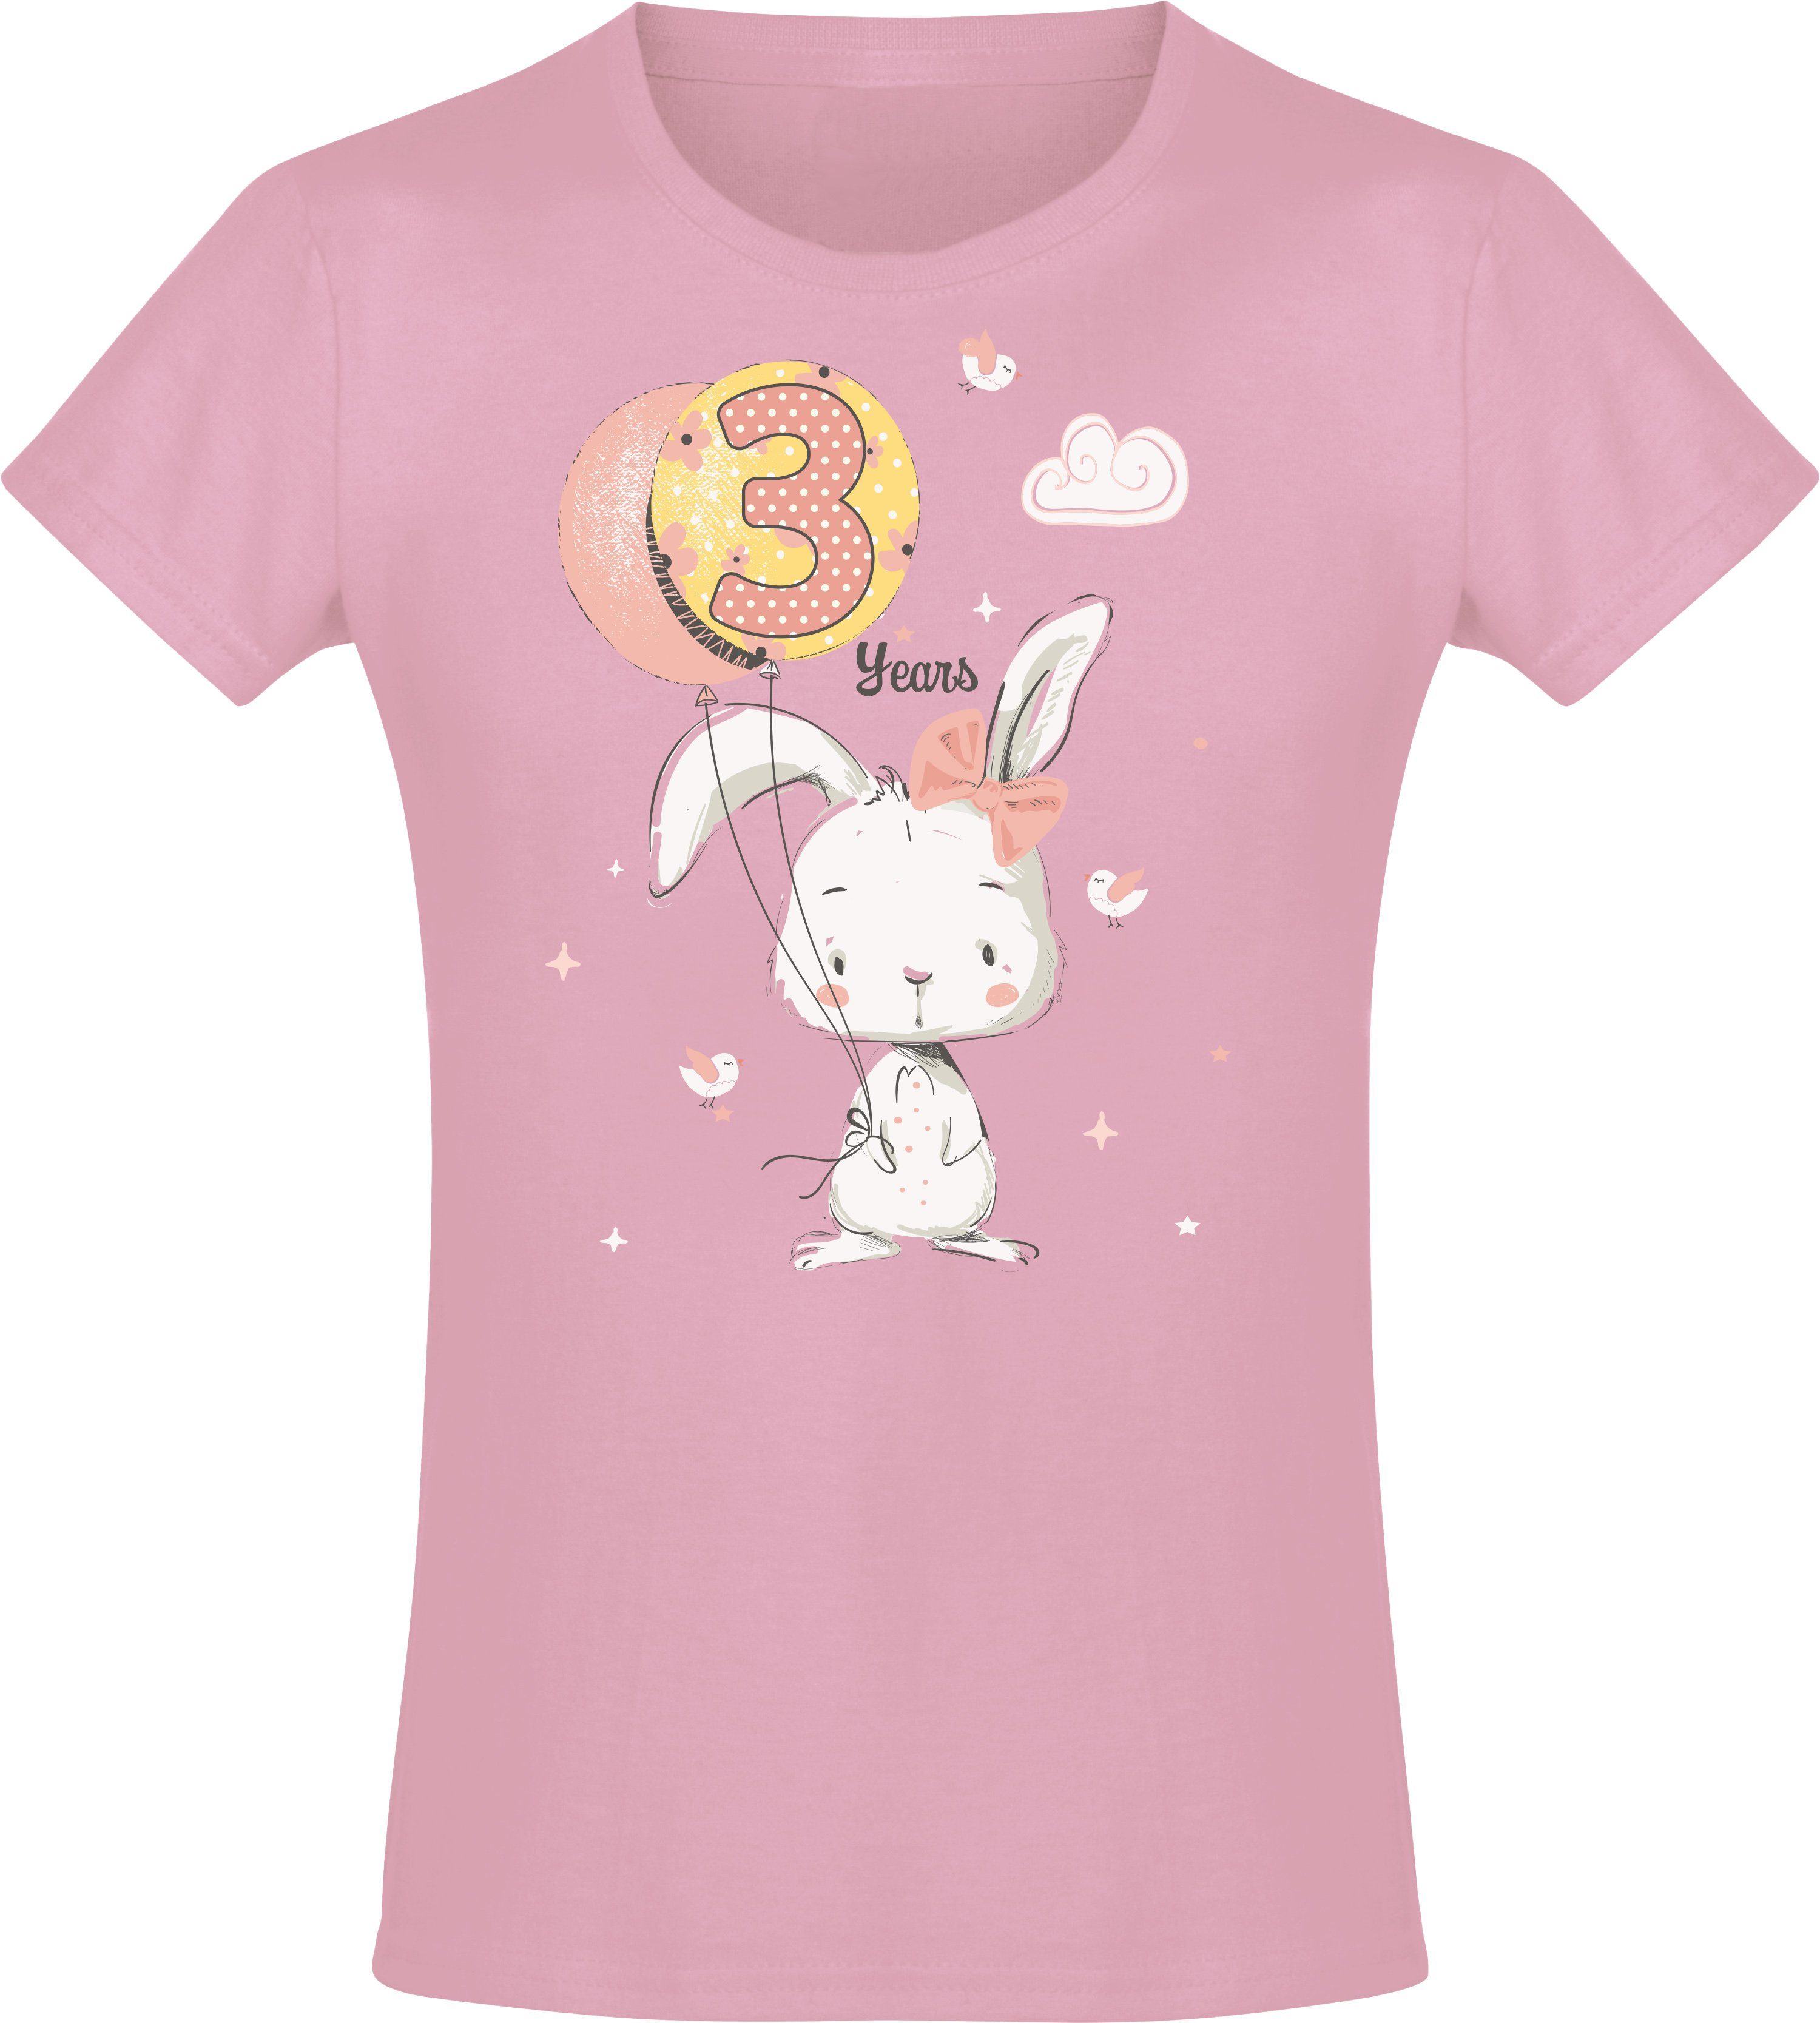 Baddery Print-Shirt Geburstagsgeschenk für Mädchen : 3 Jahre mit Hase hochwertiger Siebdruck, aus Baumwolle Light Pink